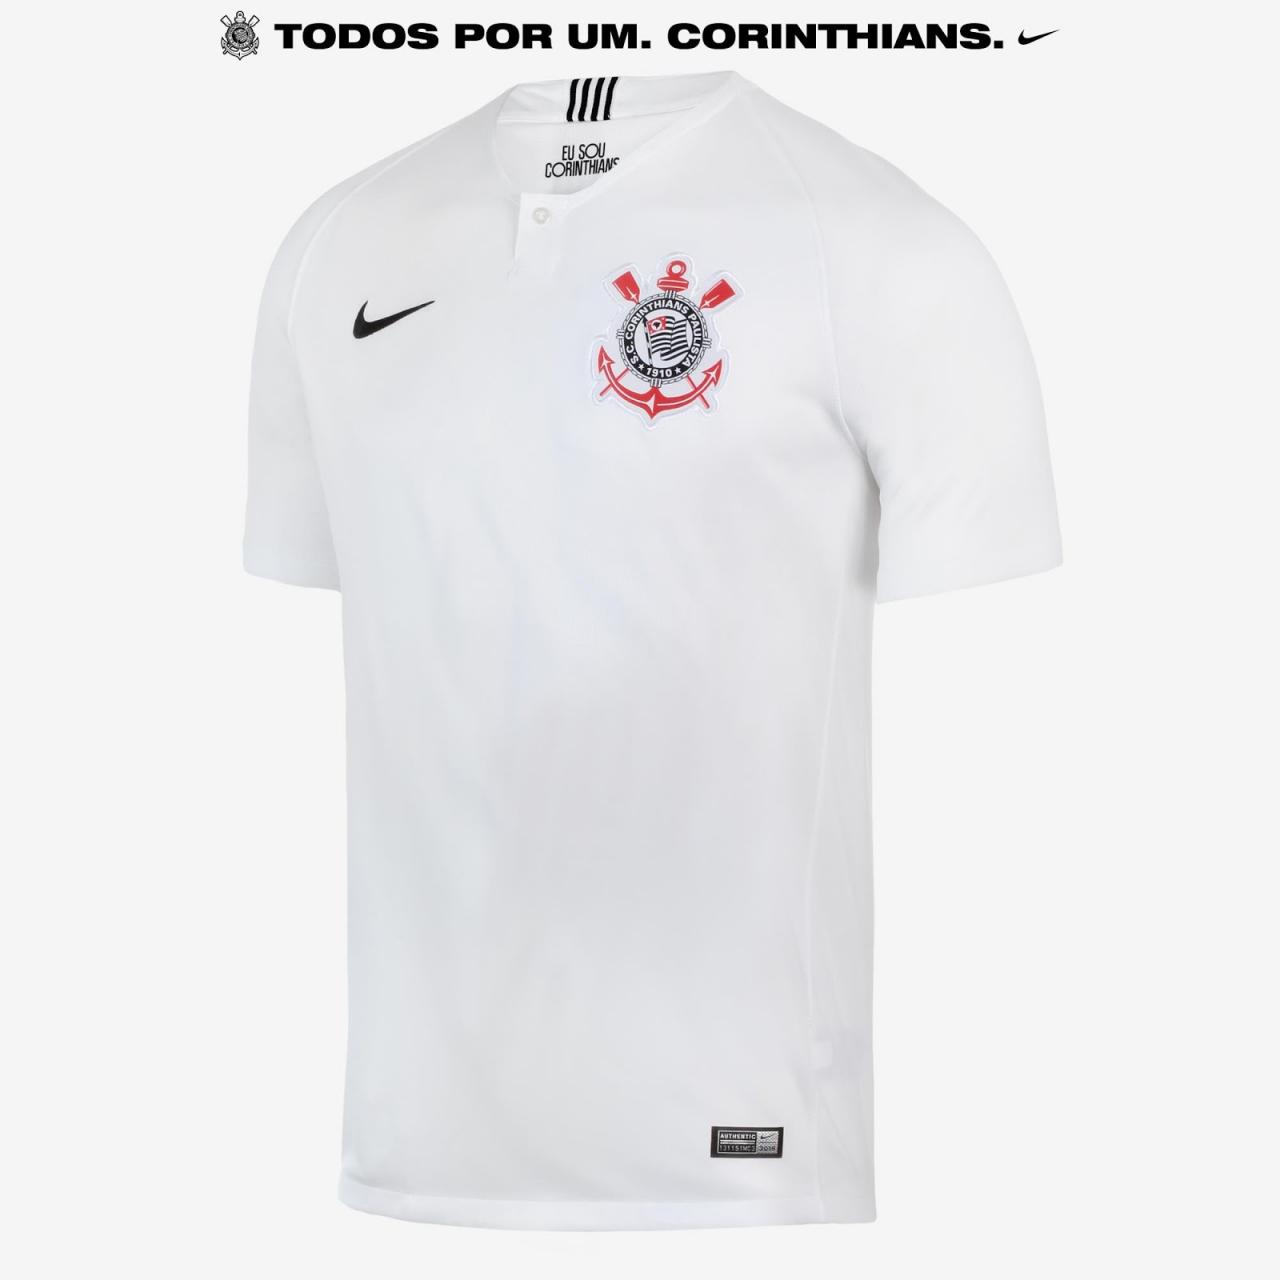 Corinthians 2018-19 Home & Away Kits